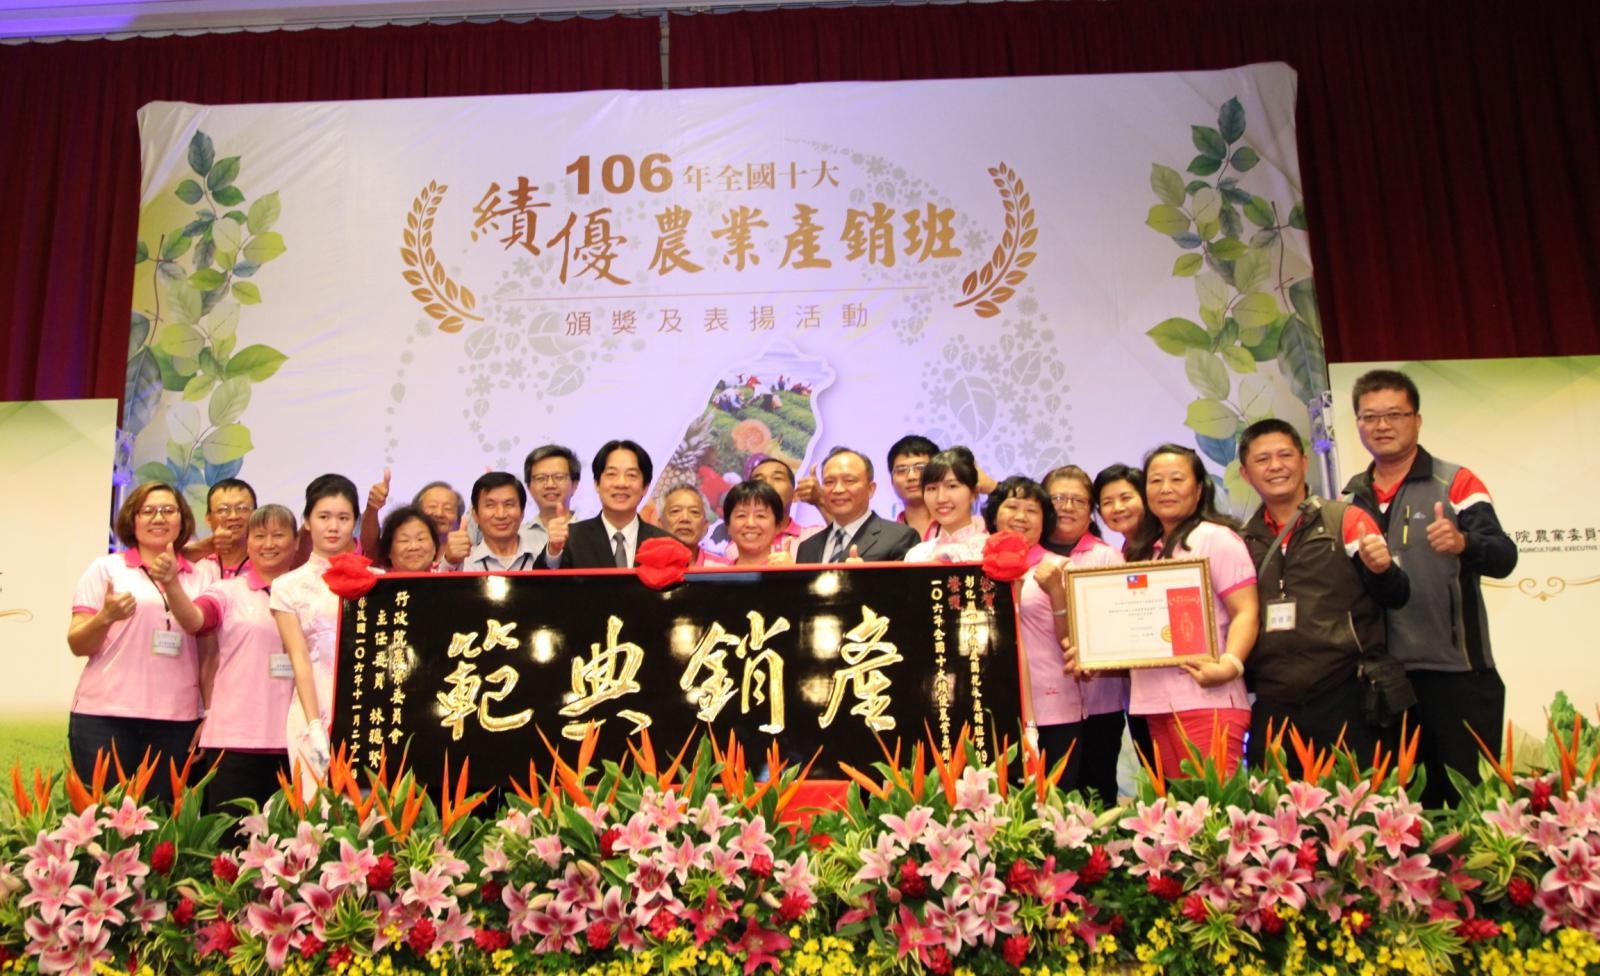 行政院農業委員會盛大舉辦「106年全國十大績優農業產銷班頒獎及表揚活動」 | 文章內置圖片